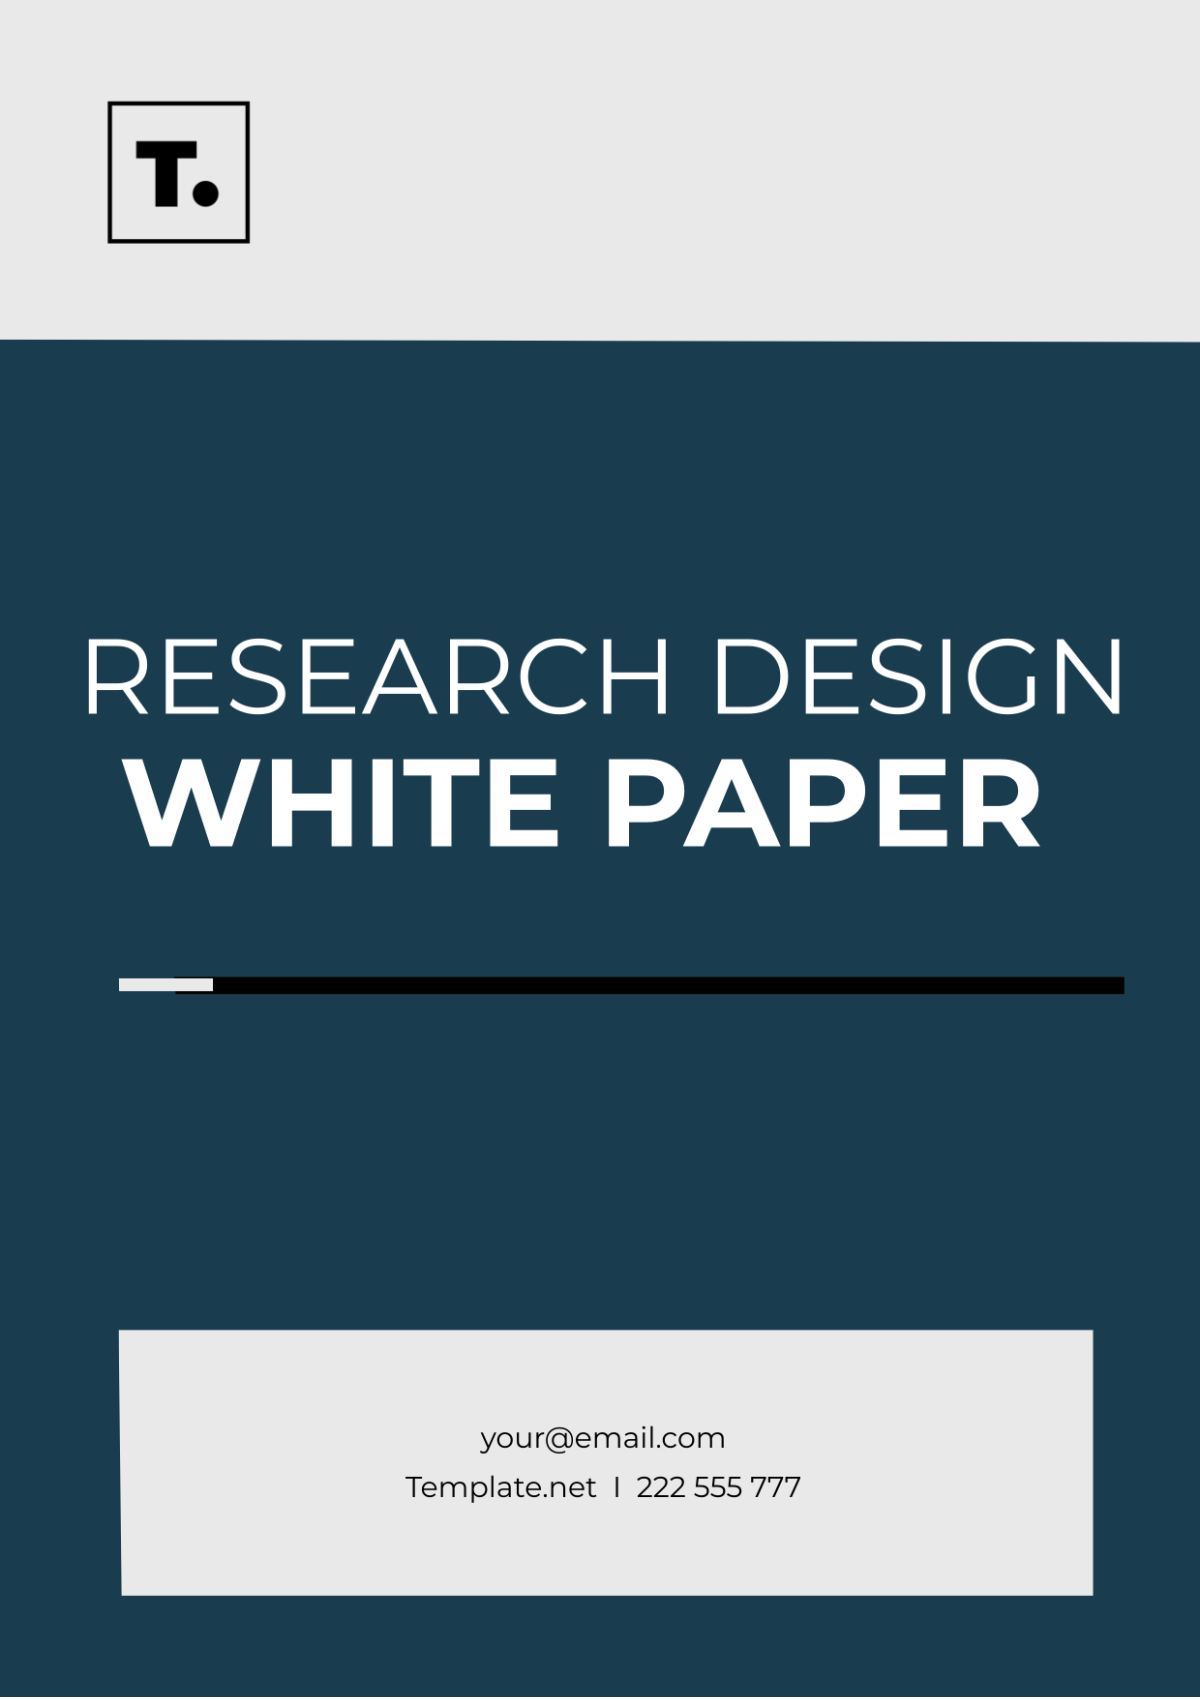 Research Design White Paper Template